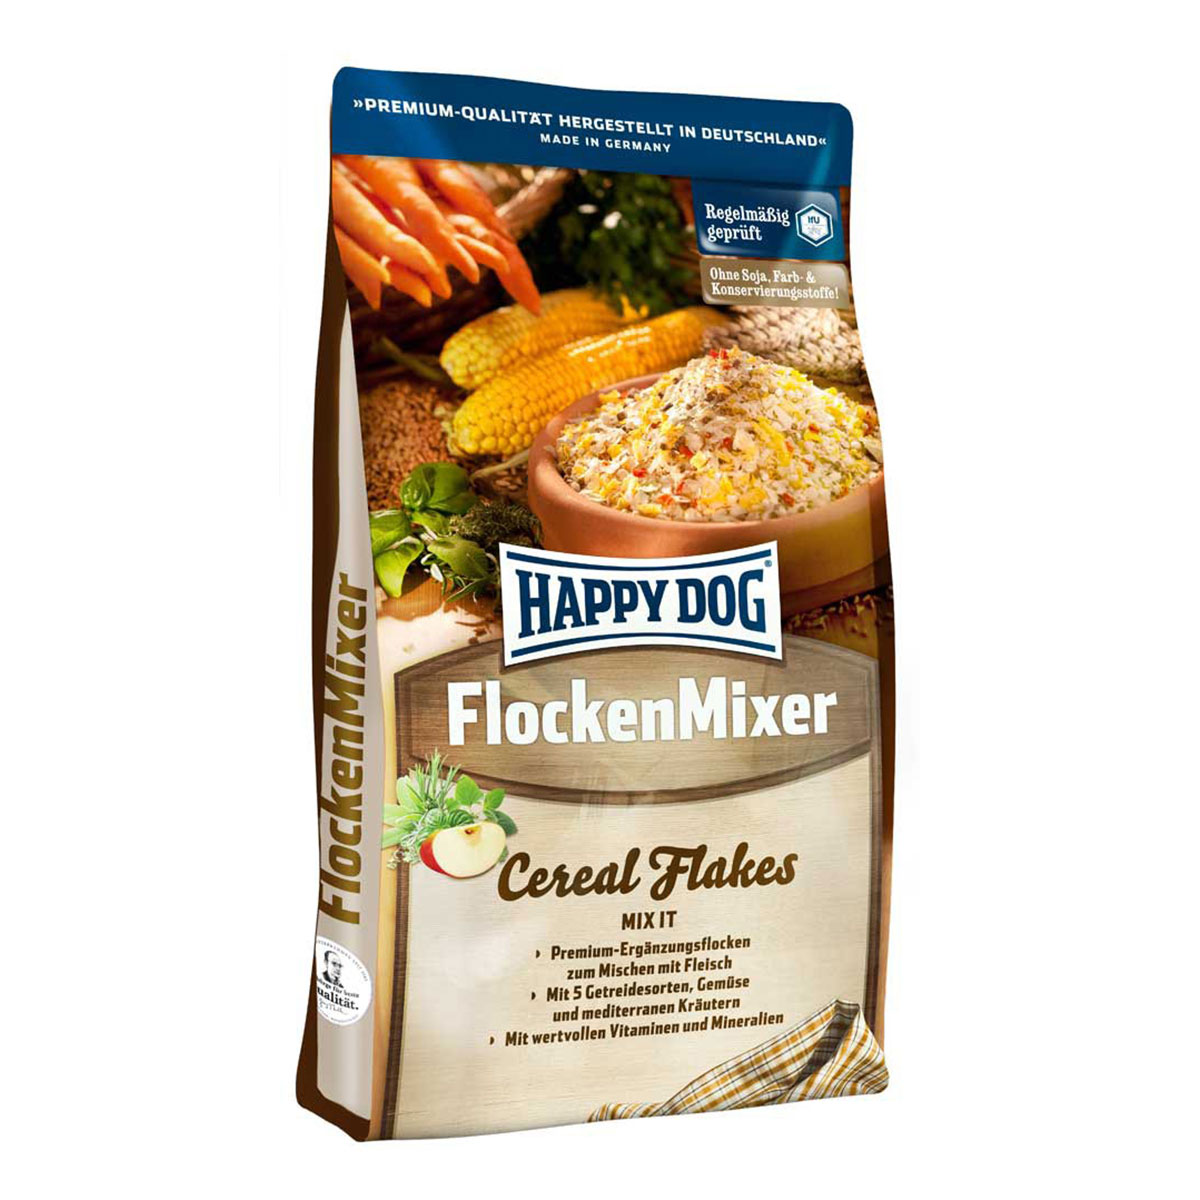 Happy Dog Flocken Mixer Ergänzungsflocken 1kg – mit 16% Rabatt günstig kaufen